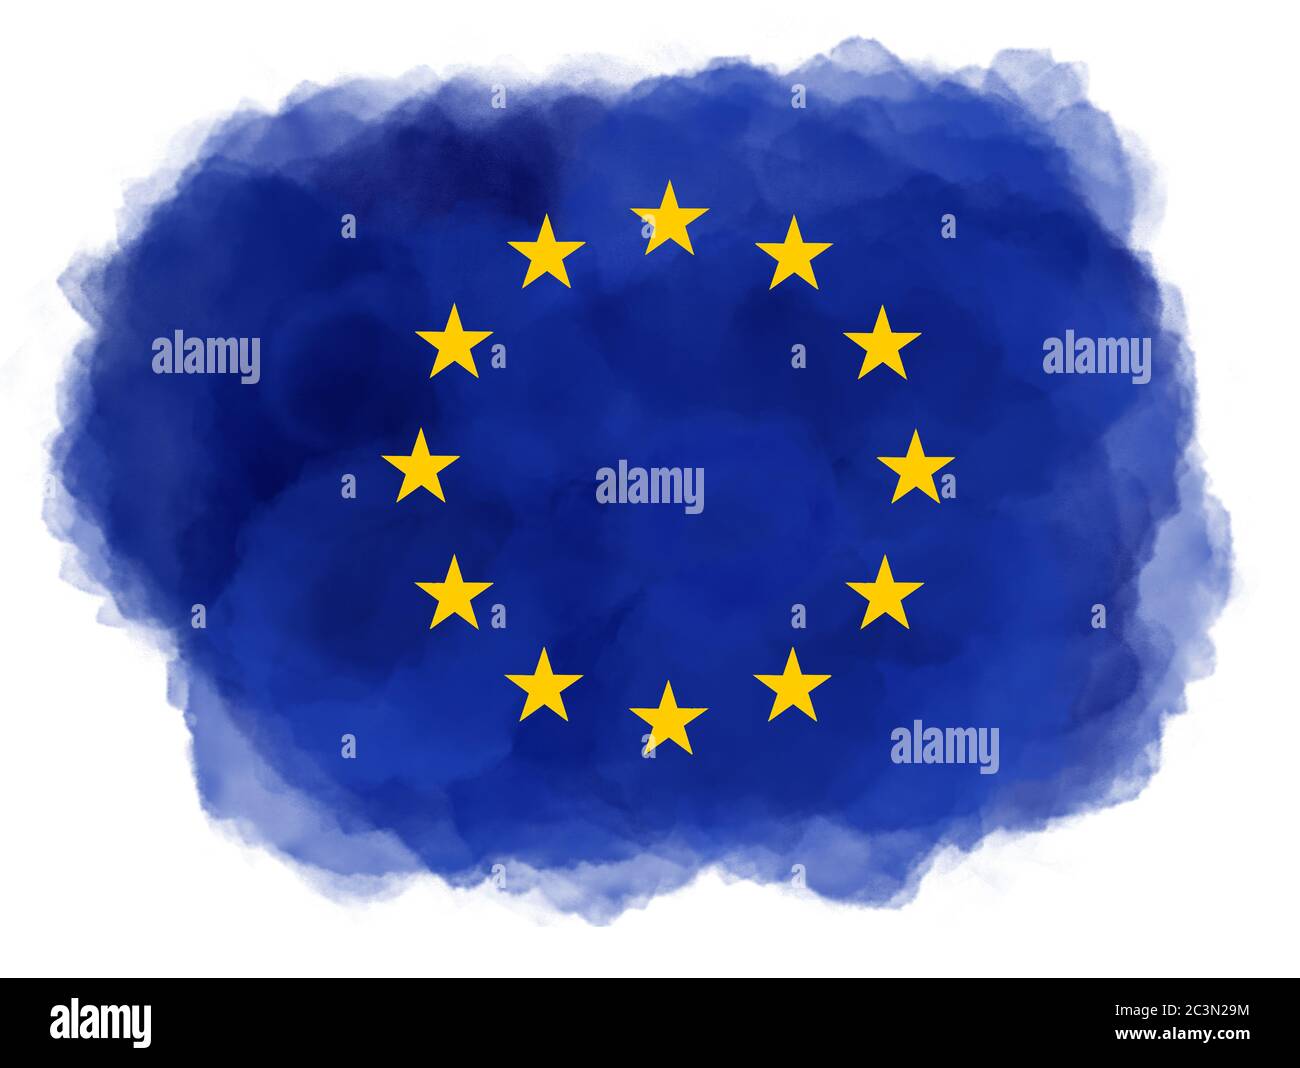 Vòng tròn ngôi sao màu vàng đến từ Liên minh châu Âu: Nhìn vào hình ảnh vòng tròn ngôi sao màu vàng rực rỡ này, bạn sẽ được trải nghiệm một phần của lịch sử và sự phát triển của Liên minh châu Âu. Đây cũng là biểu tượng của tình đoàn kết và hòa bình của các quốc gia châu Âu - một hình ảnh đầy ý nghĩa không nên bỏ lỡ!